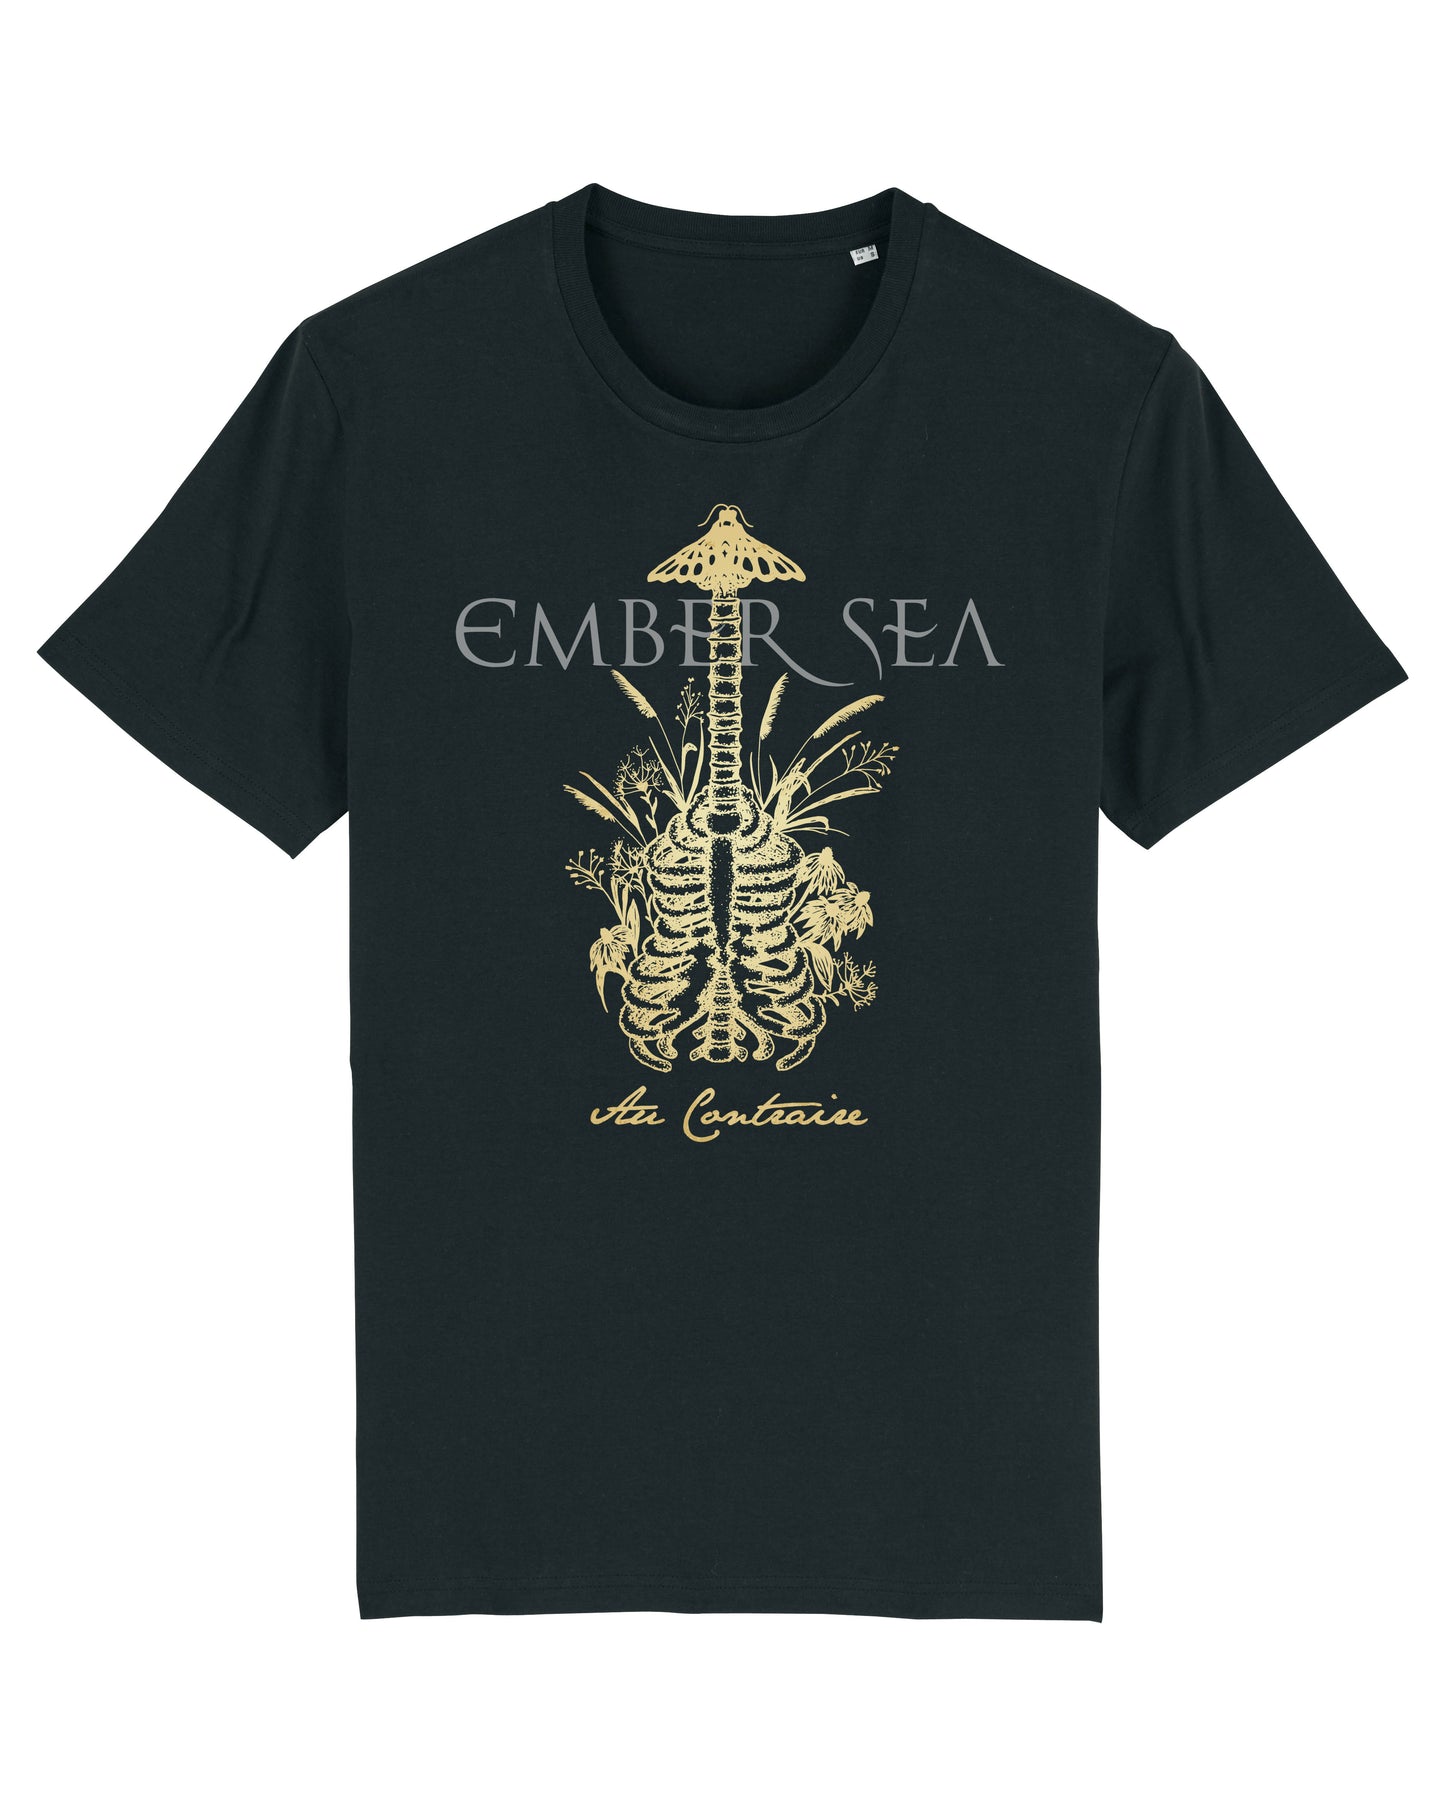 Ember Sea - Au Contraire - T-Shirt